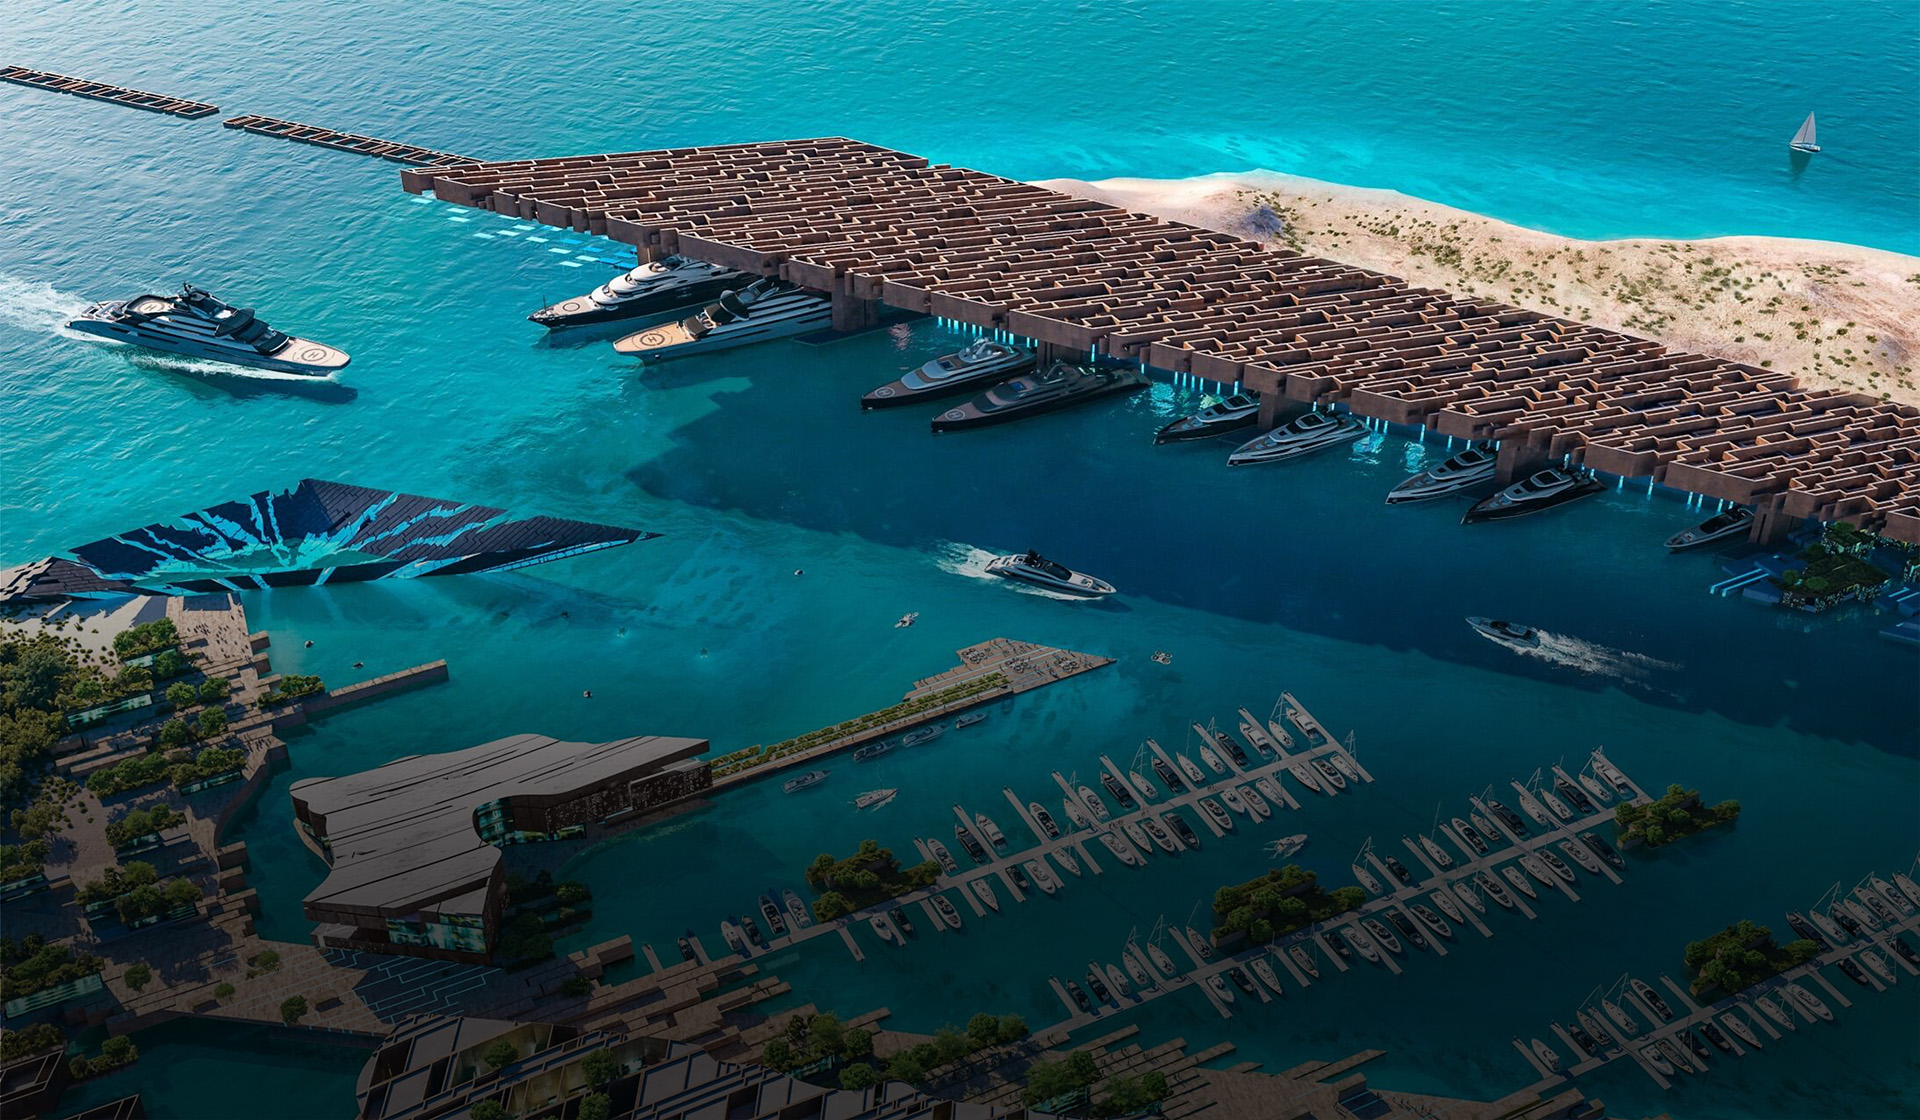 Vue aérienne du port de plaisance de Jaumur avec voiliers et yachts de luxe amarrés aux quais  